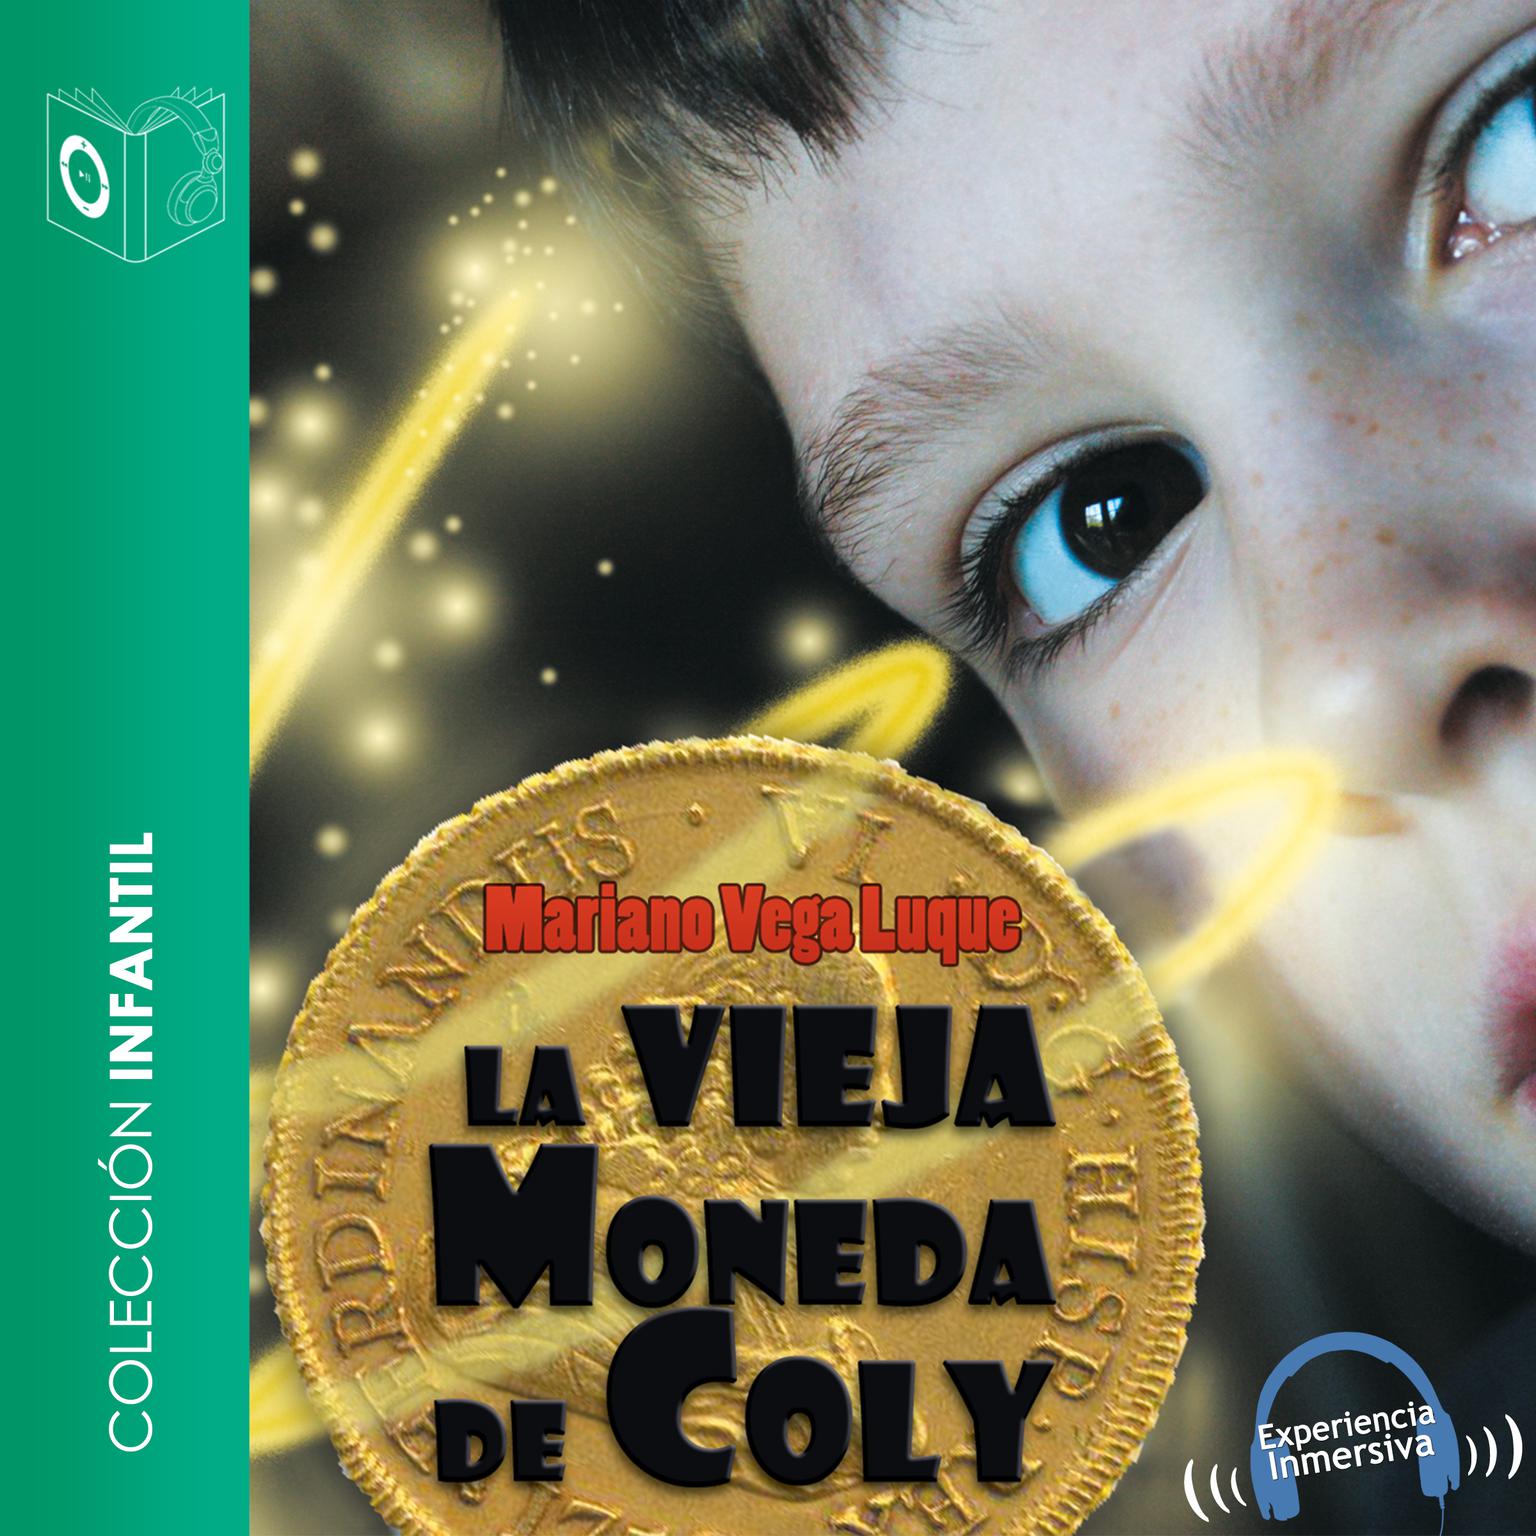 La vieja moneda de Coly Audiobook, by Mariano Vega Luque